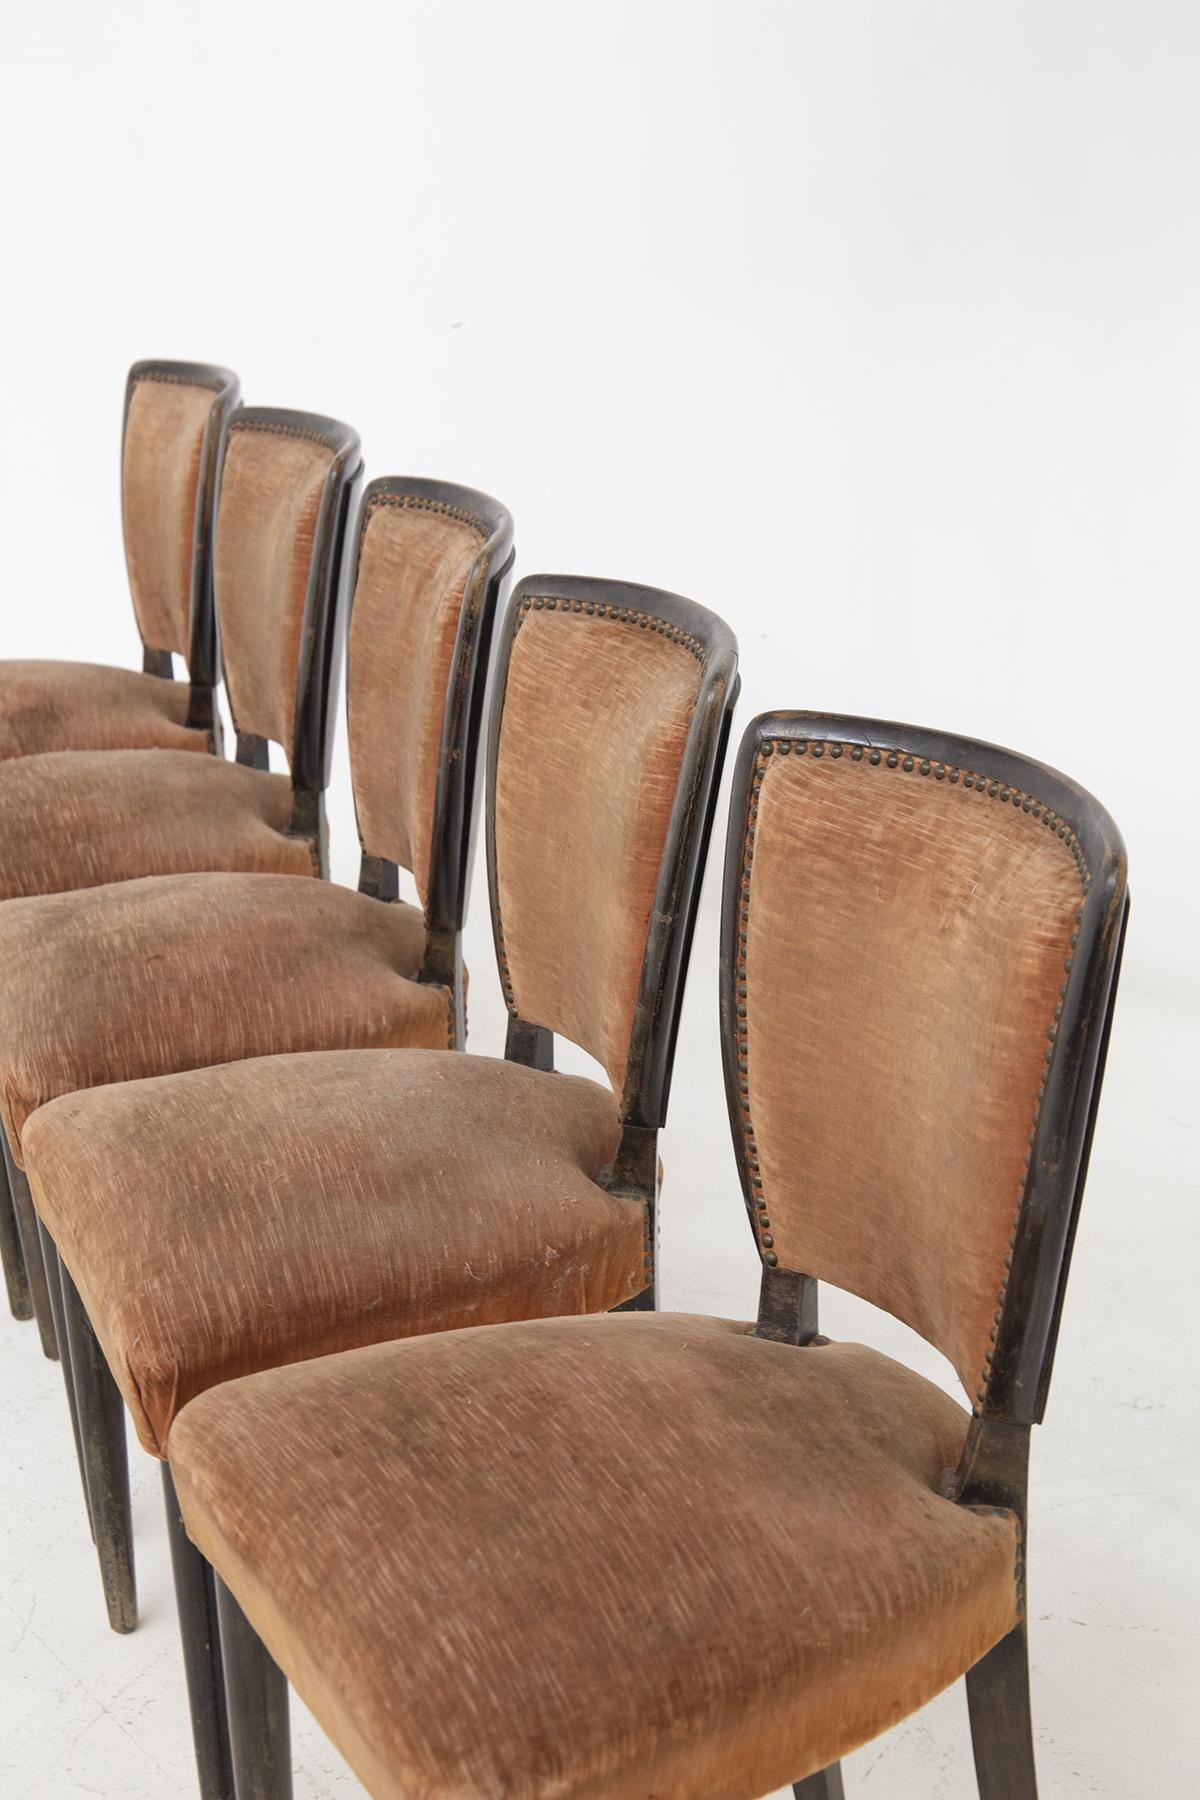 Wunderschönes Stuhlset, bestehend aus sechs Holzstühlen aus den 1960er Jahren, aus feiner italienischer Fertigung. Die Stühle sind von Melchiorre BEGA.
Die Stühle haben einen Holzrahmen mit 4 Beinen, von denen die beiden vorderen gerade und